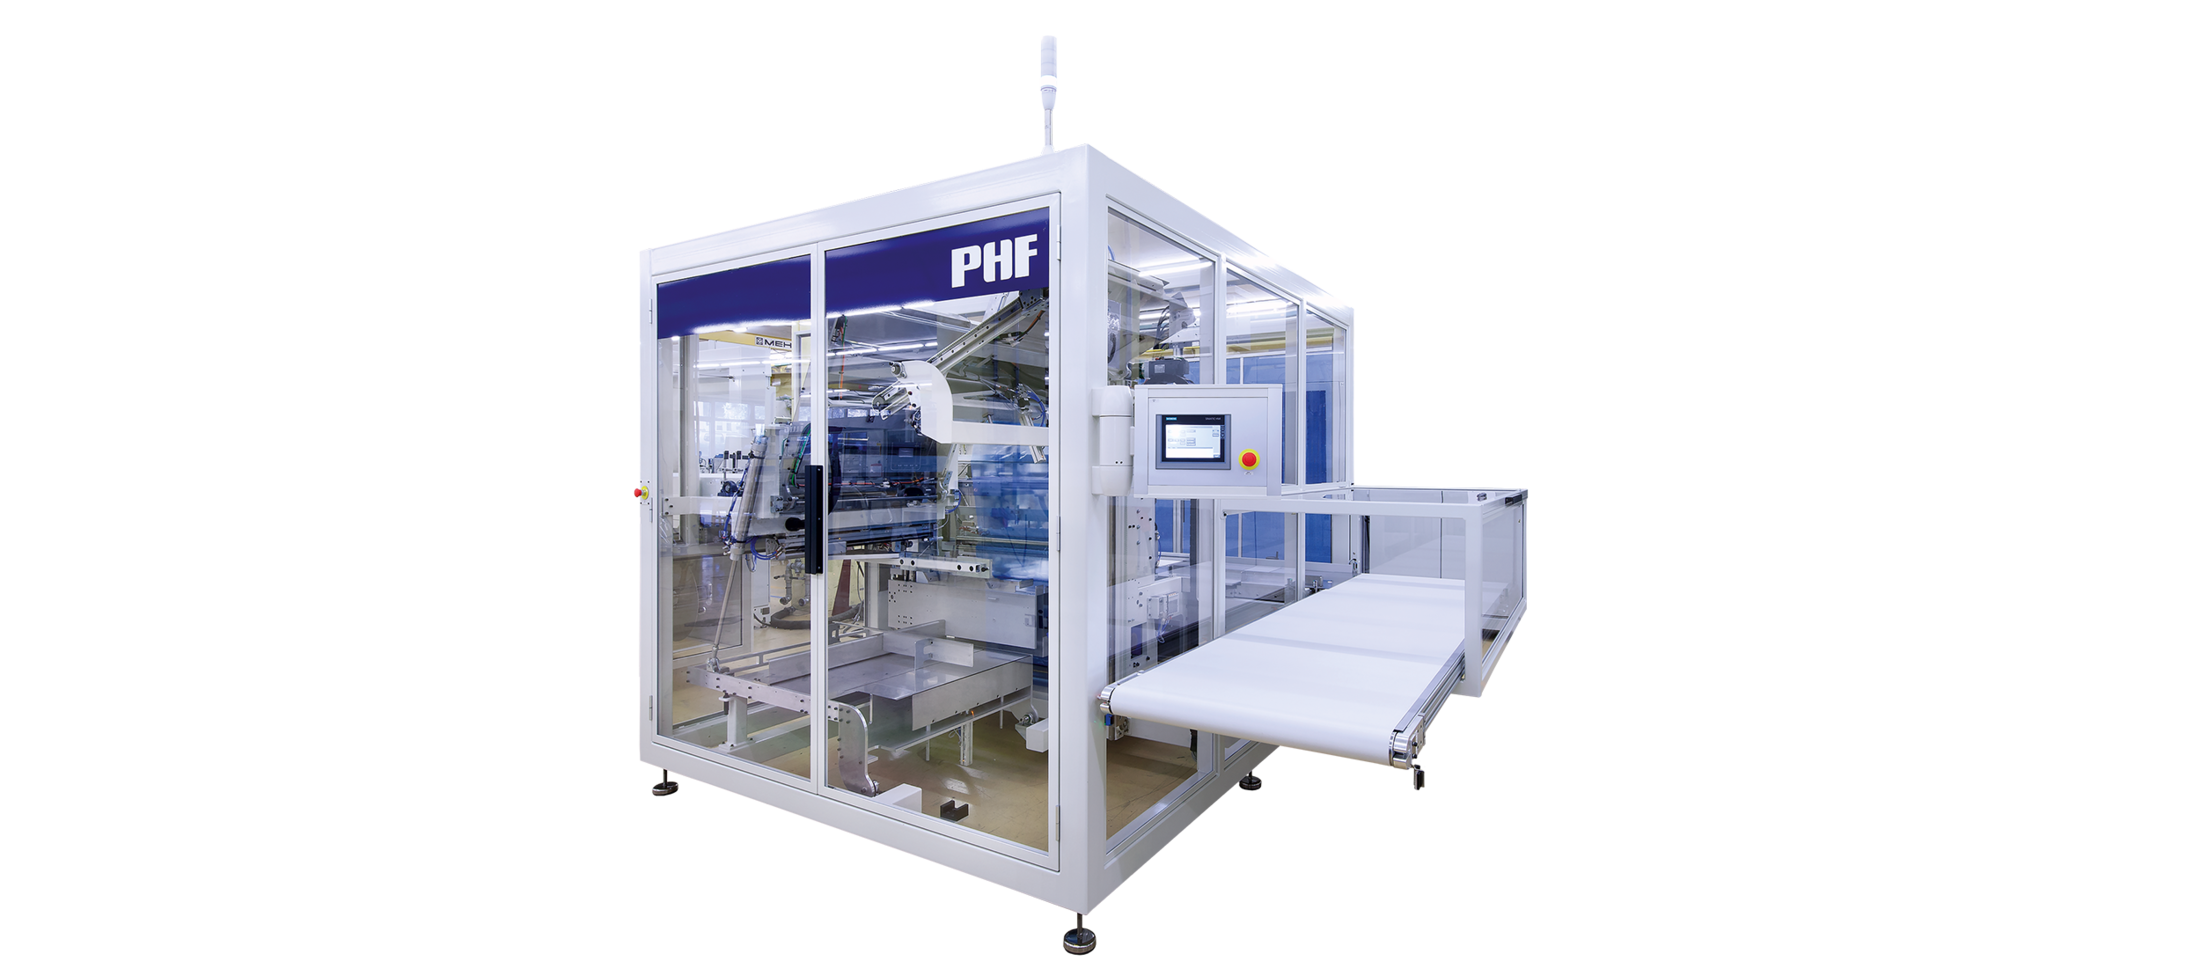 ILLIG PHF 80 product handling system | © ILLIG Maschinenbau